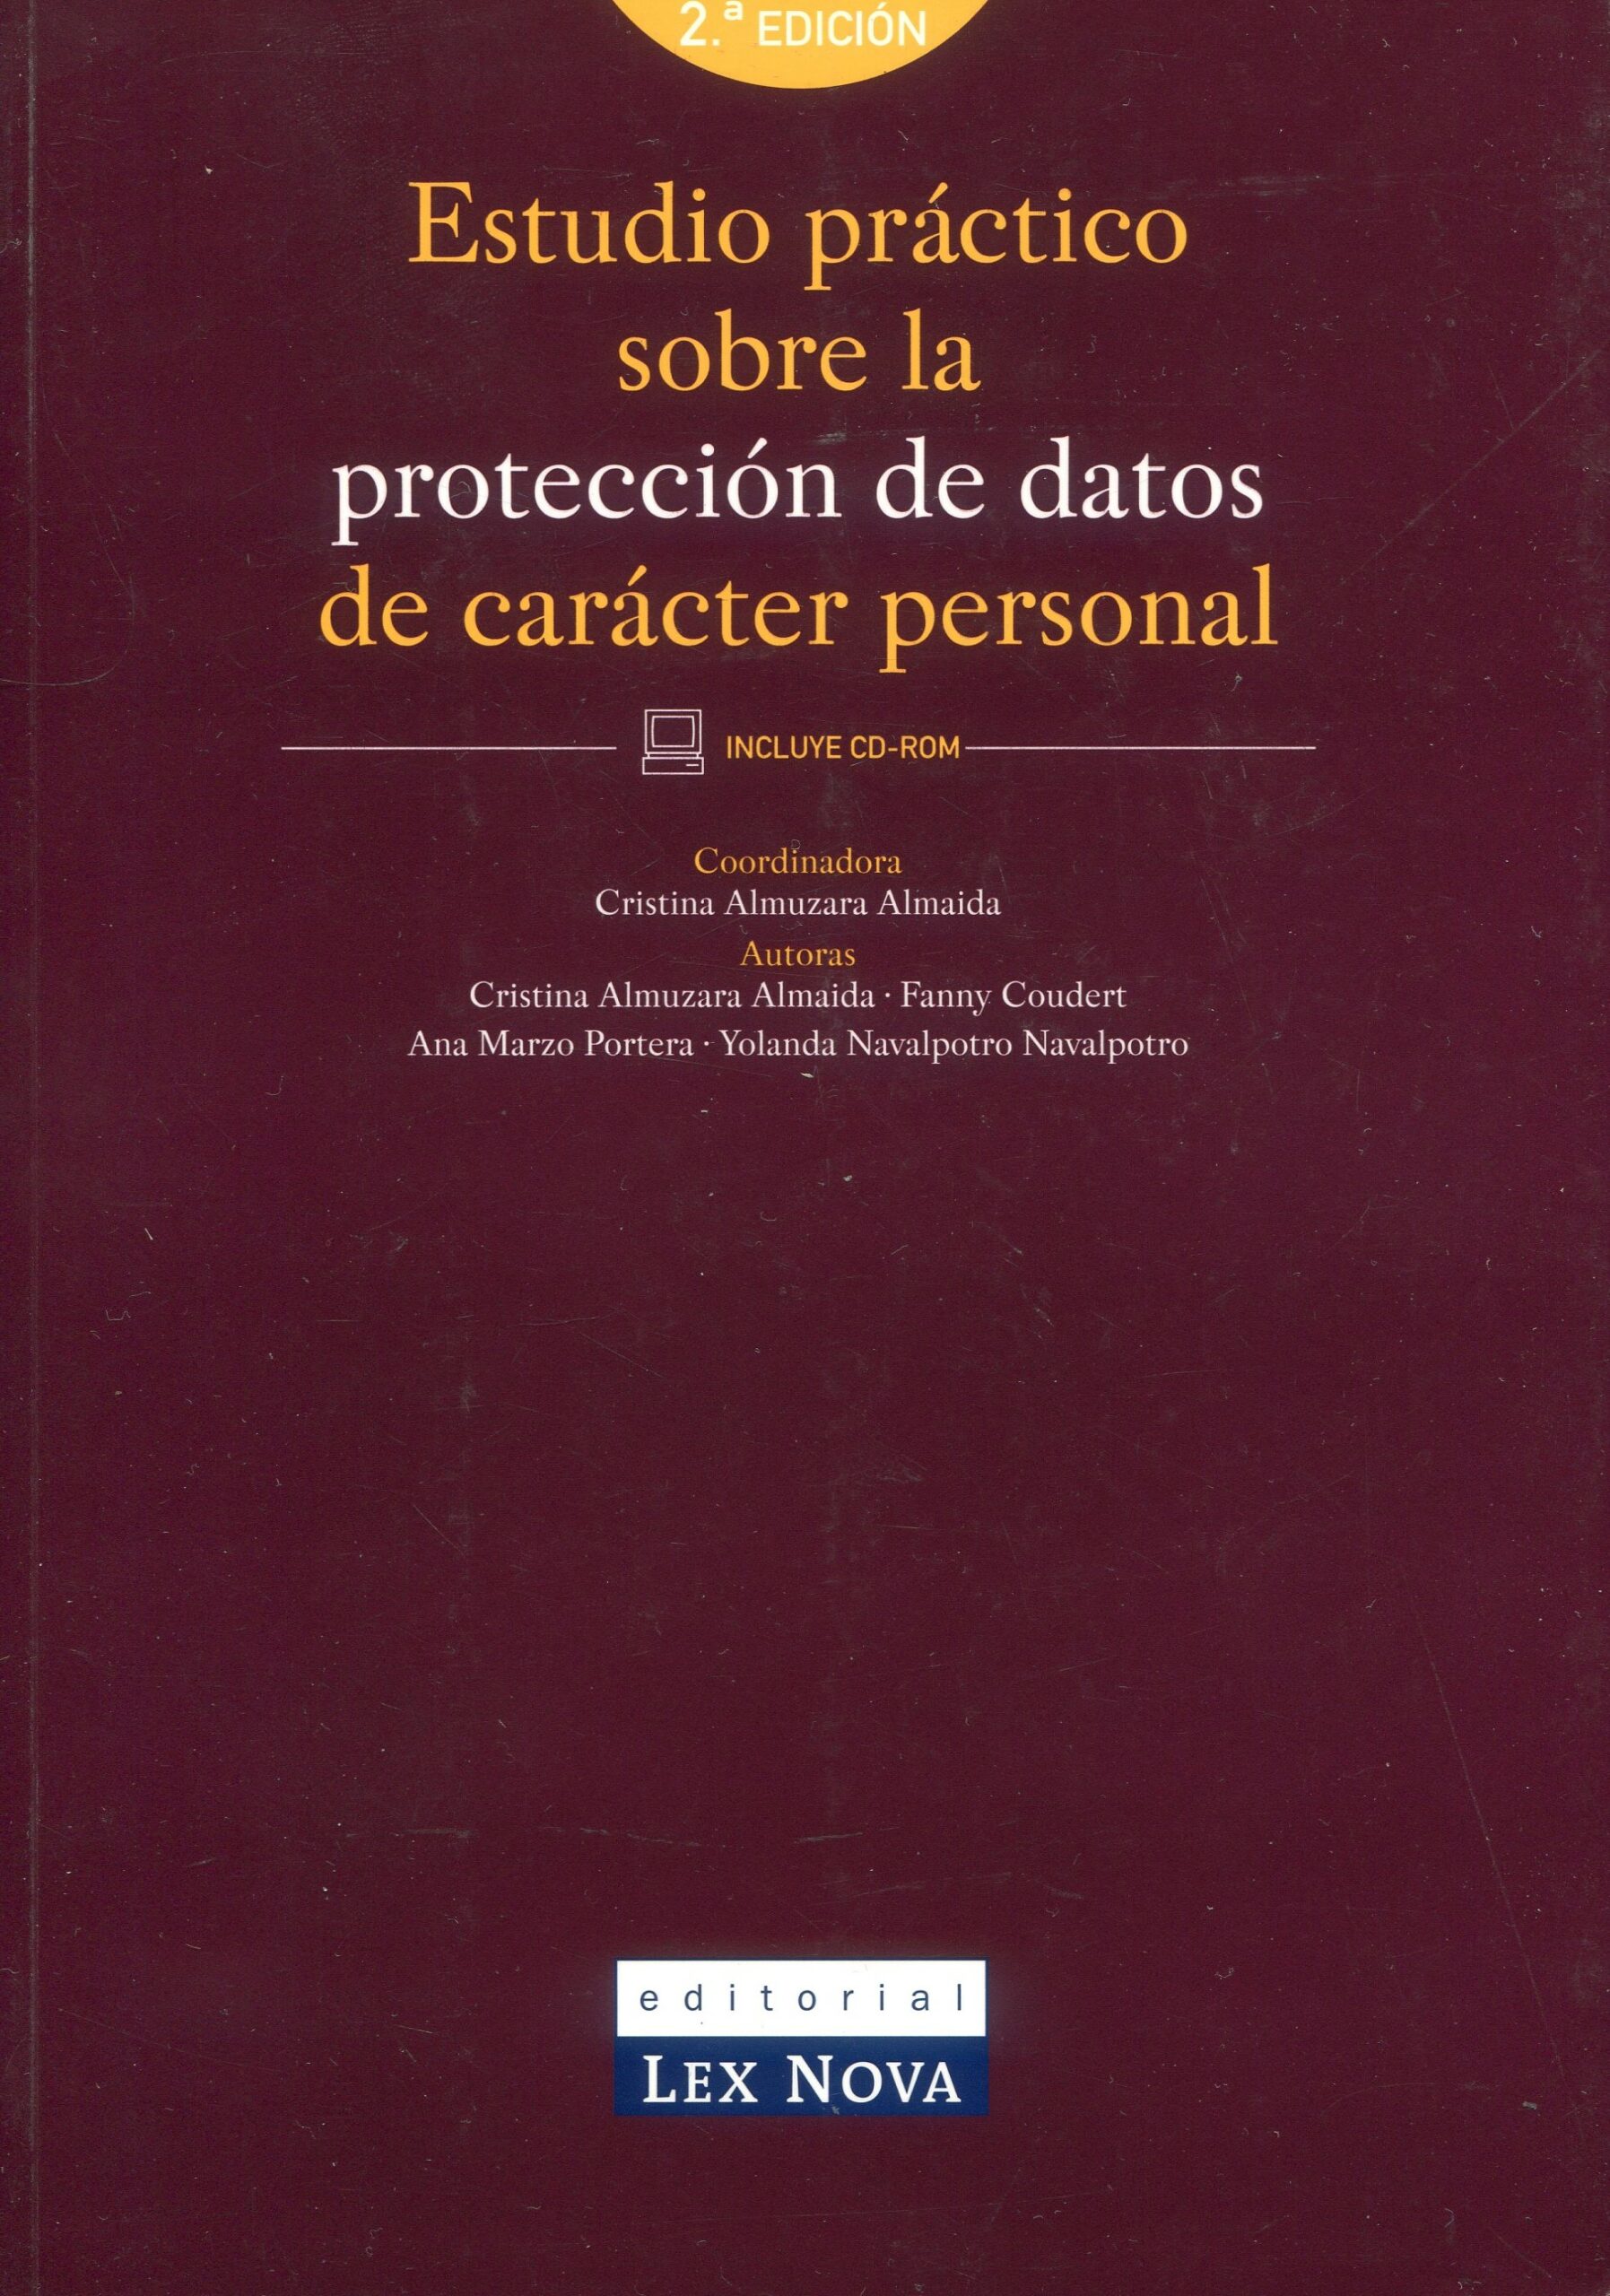 Estudio práctico sobre protección de datos de carácter personal 9788484064367